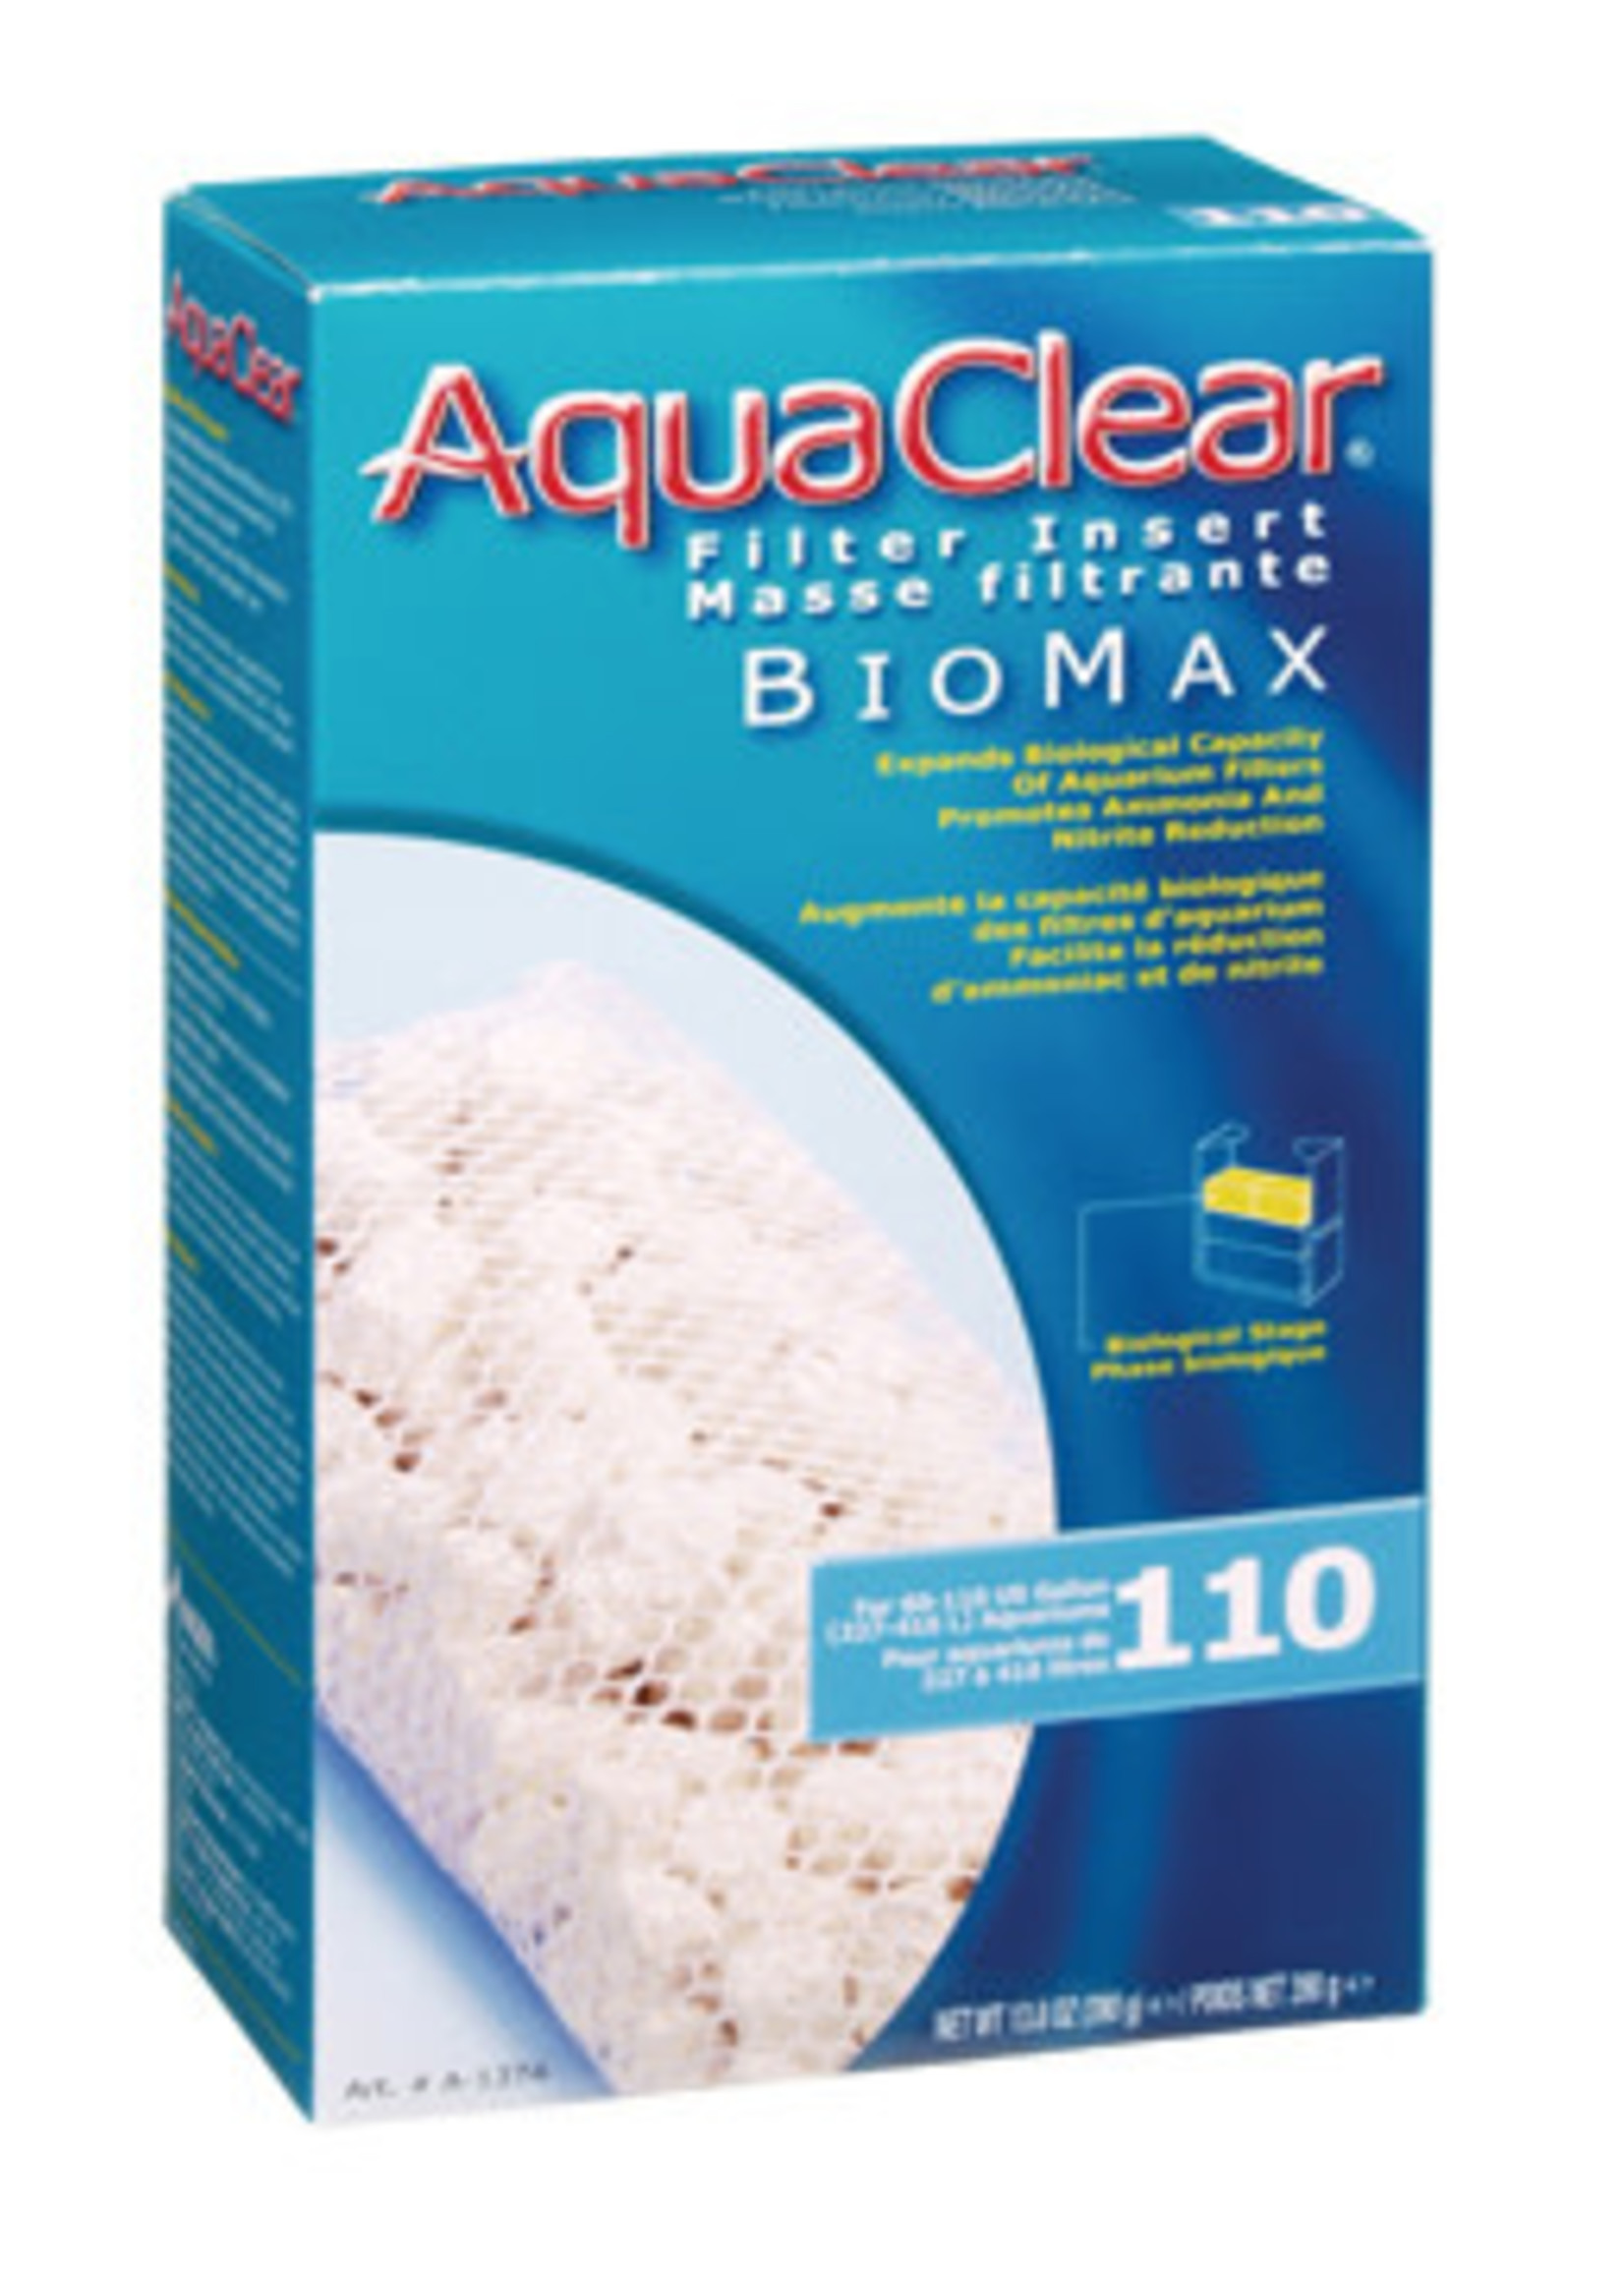 AquaClear 110 Bio-Max Insert, 390 g (13.8 oz)